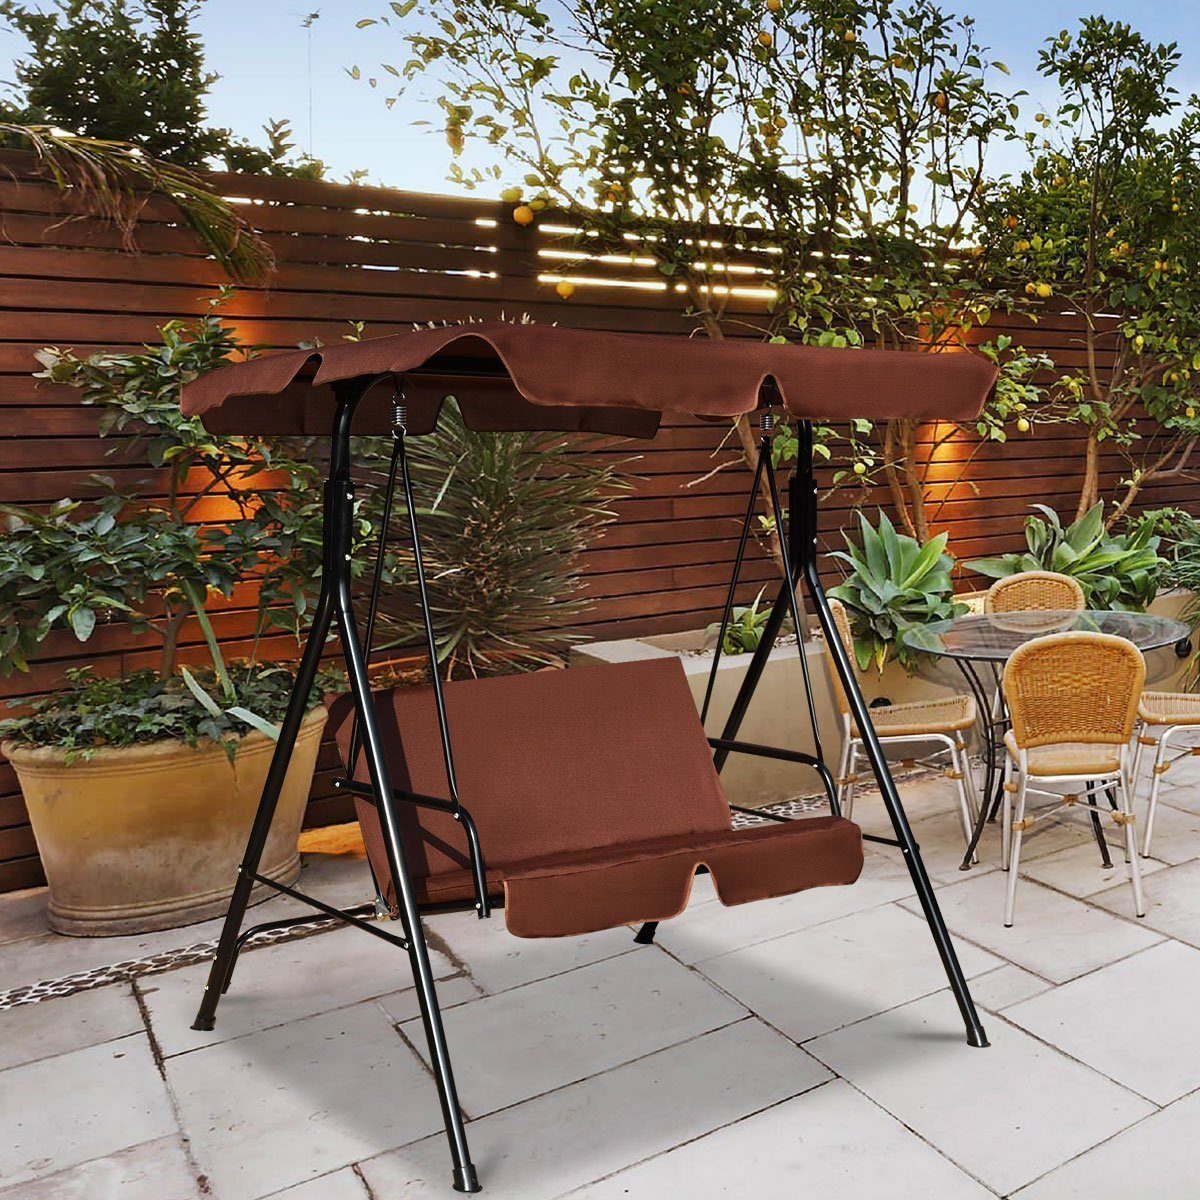 Braun Sonnendach, Gartenliege, COSTWAY Gartenschaukel, 2-Sitzer mit Hollywoodschaukel